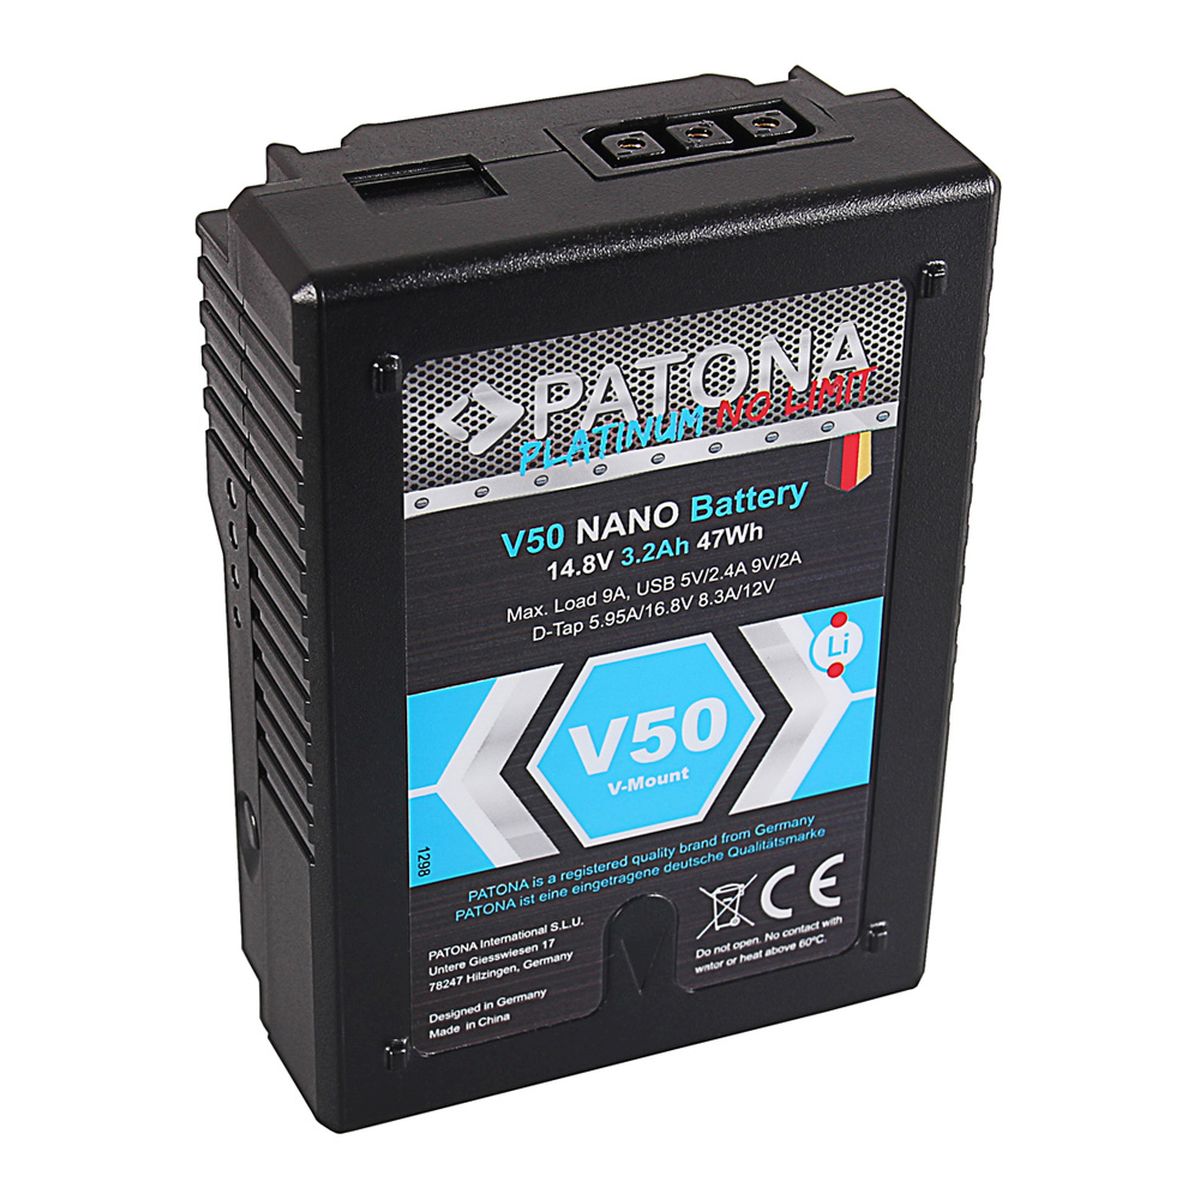 Patona V-Mount 47 Wh Platinum